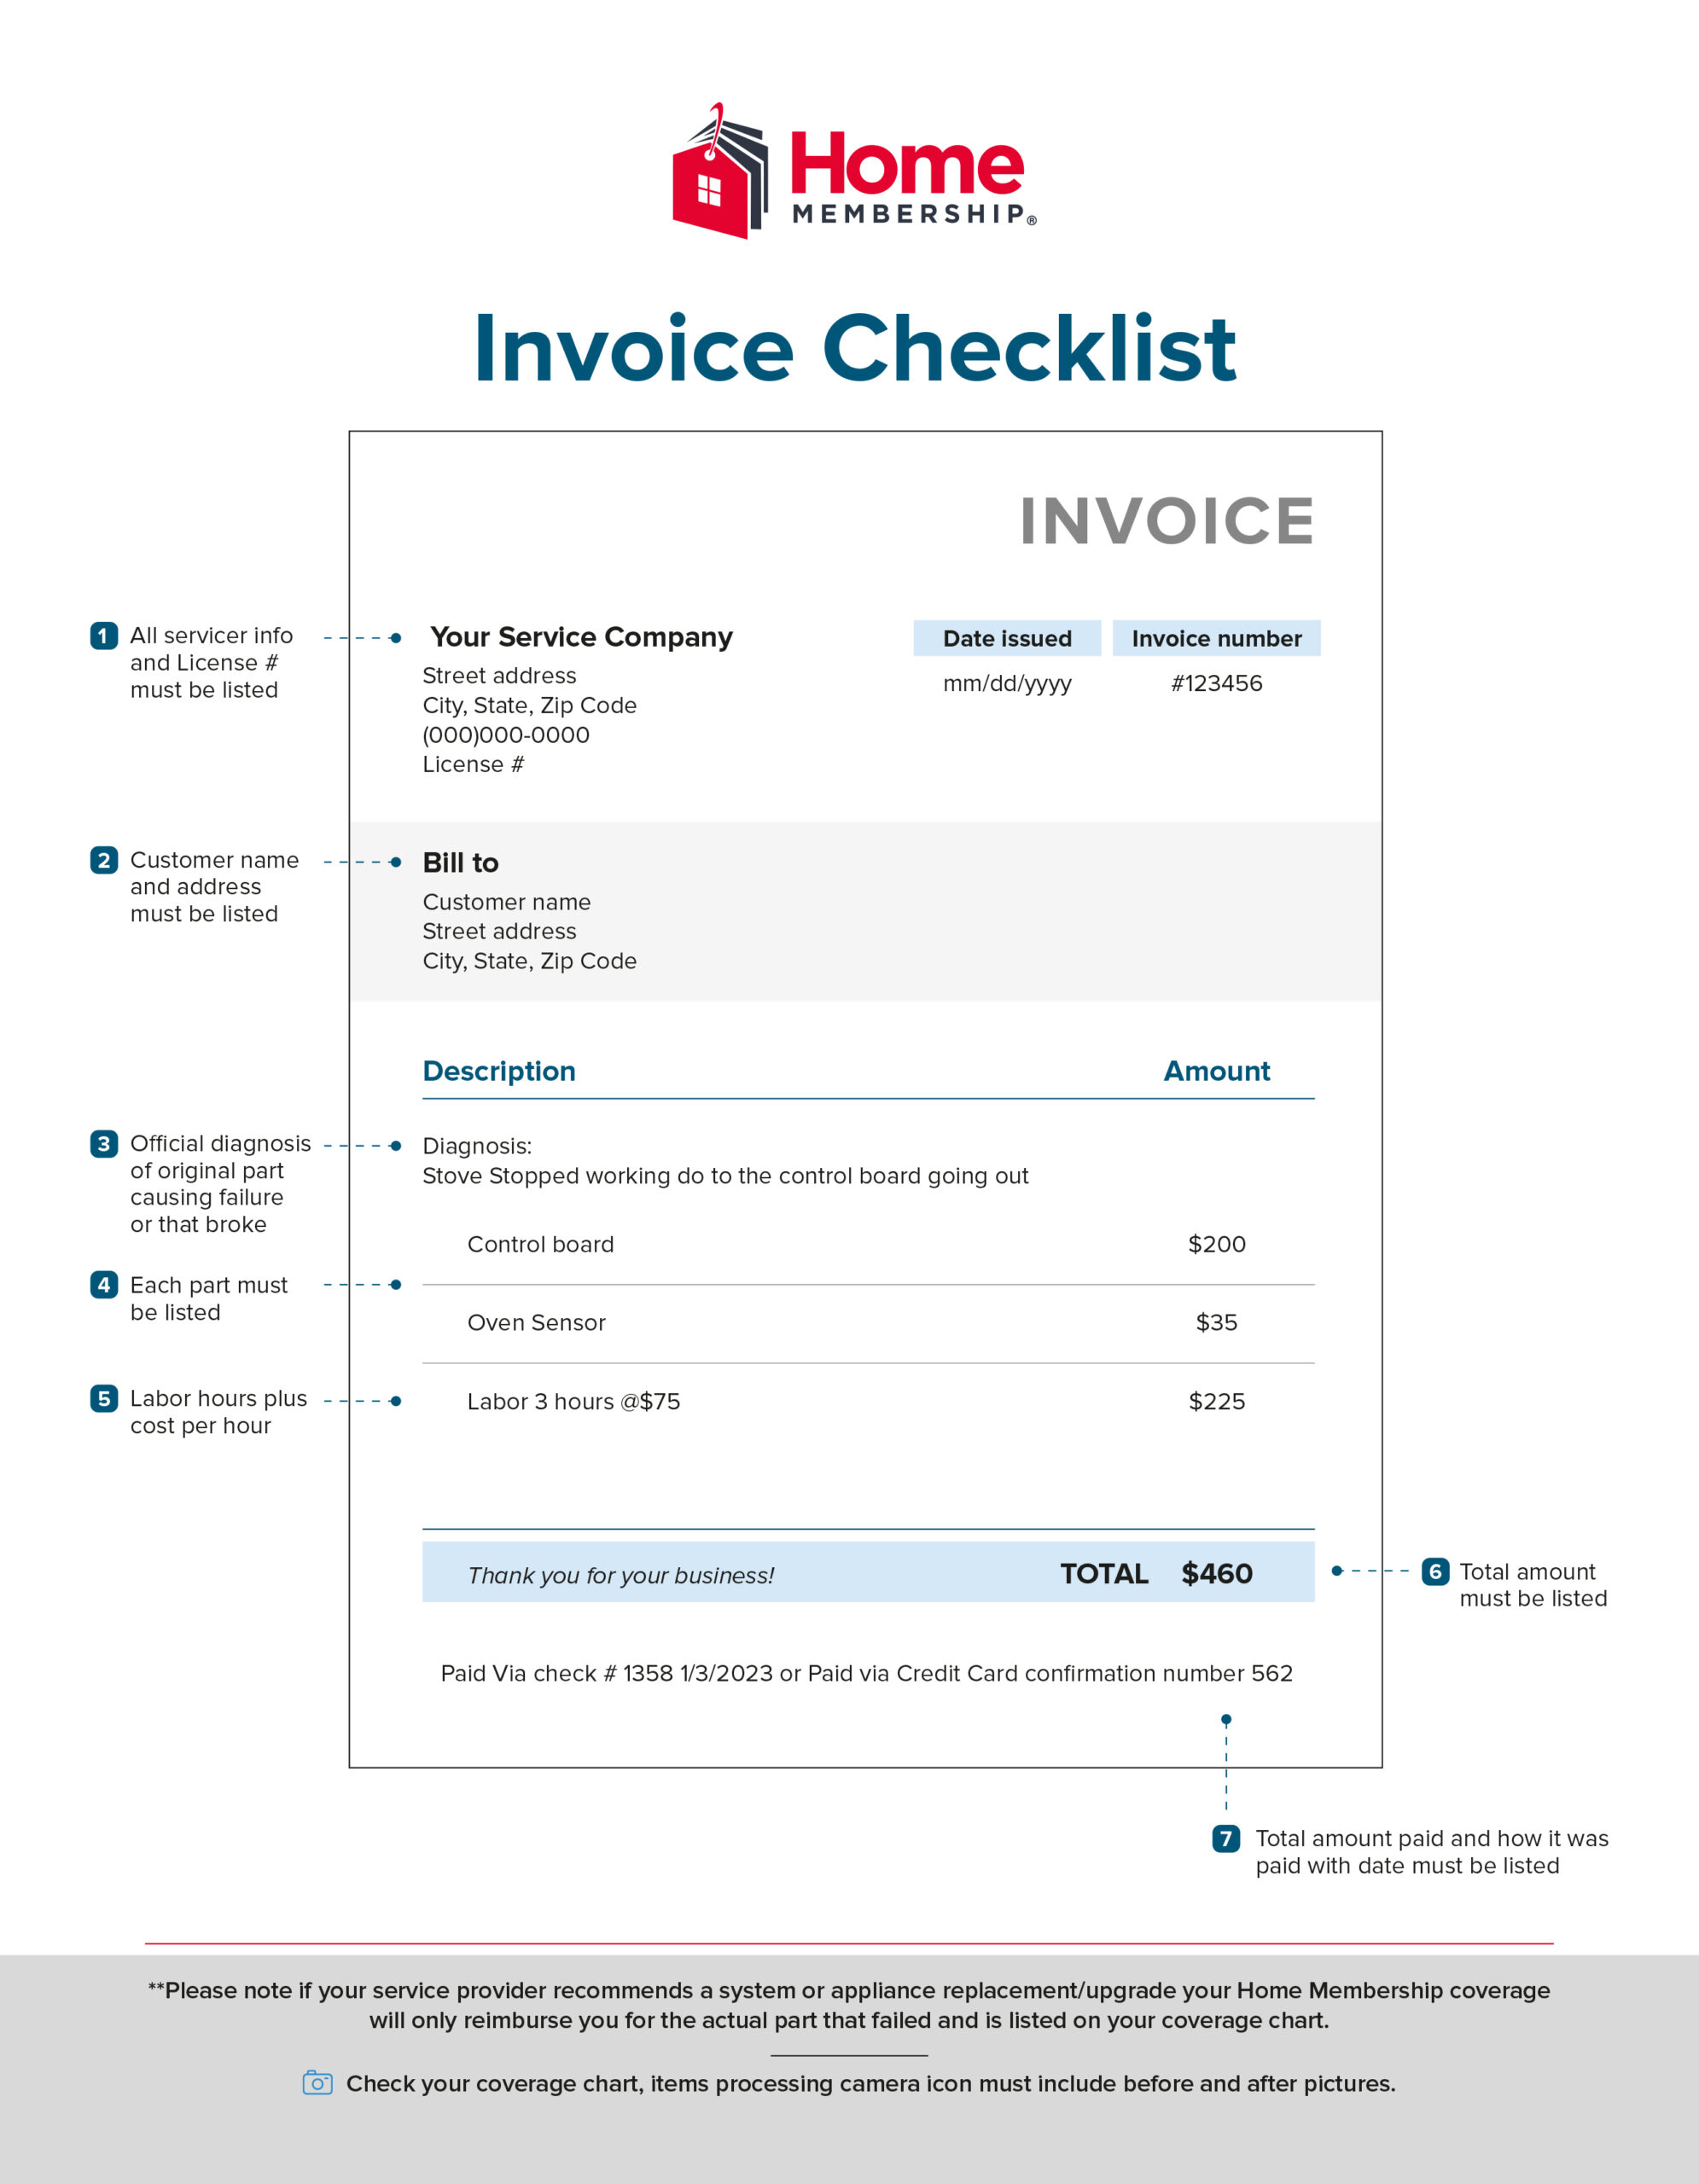 AOA-Invoice Checklist-v1